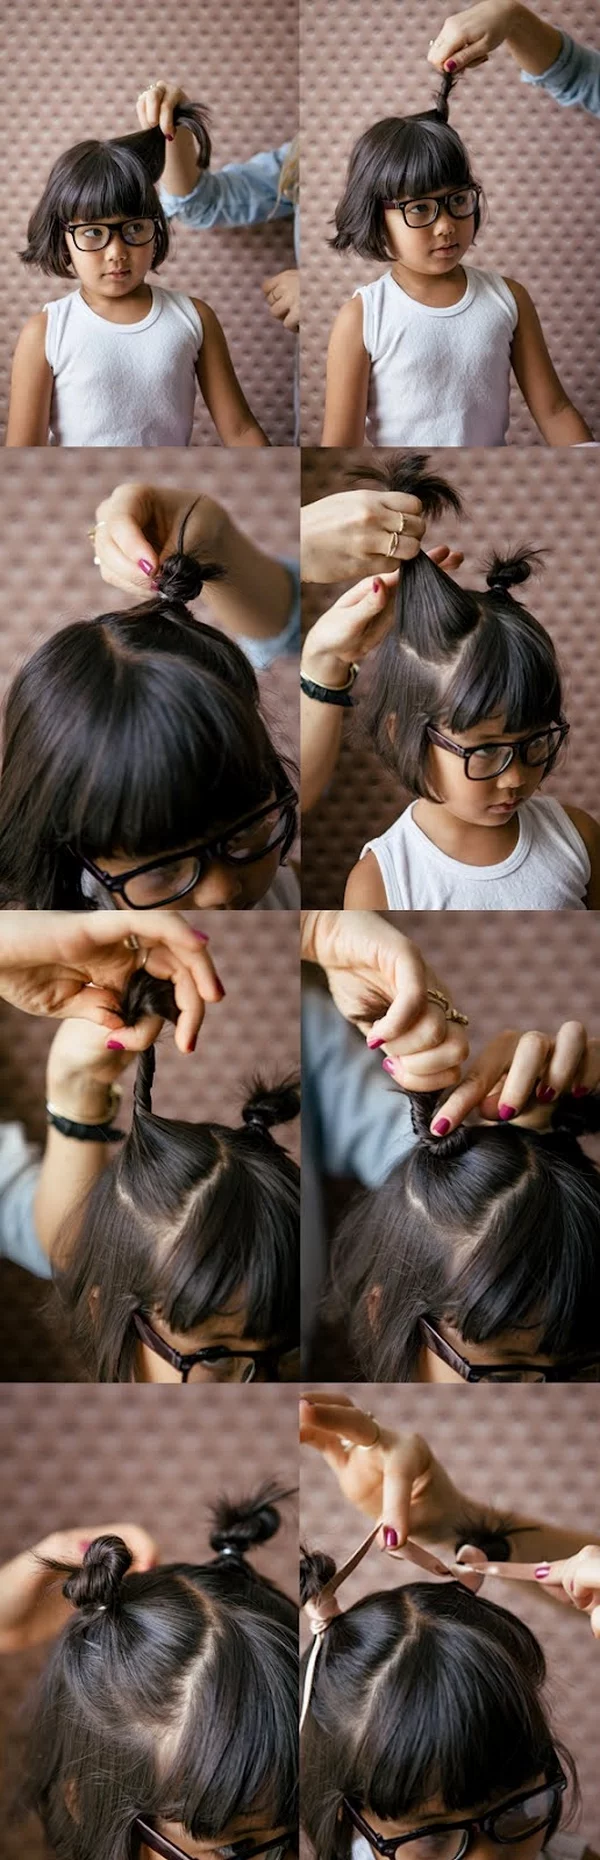 Einfache Frisuren für die Schule kleines Mädchen dunkles Haar mit Pony Teil des Haares hochgesteckt 